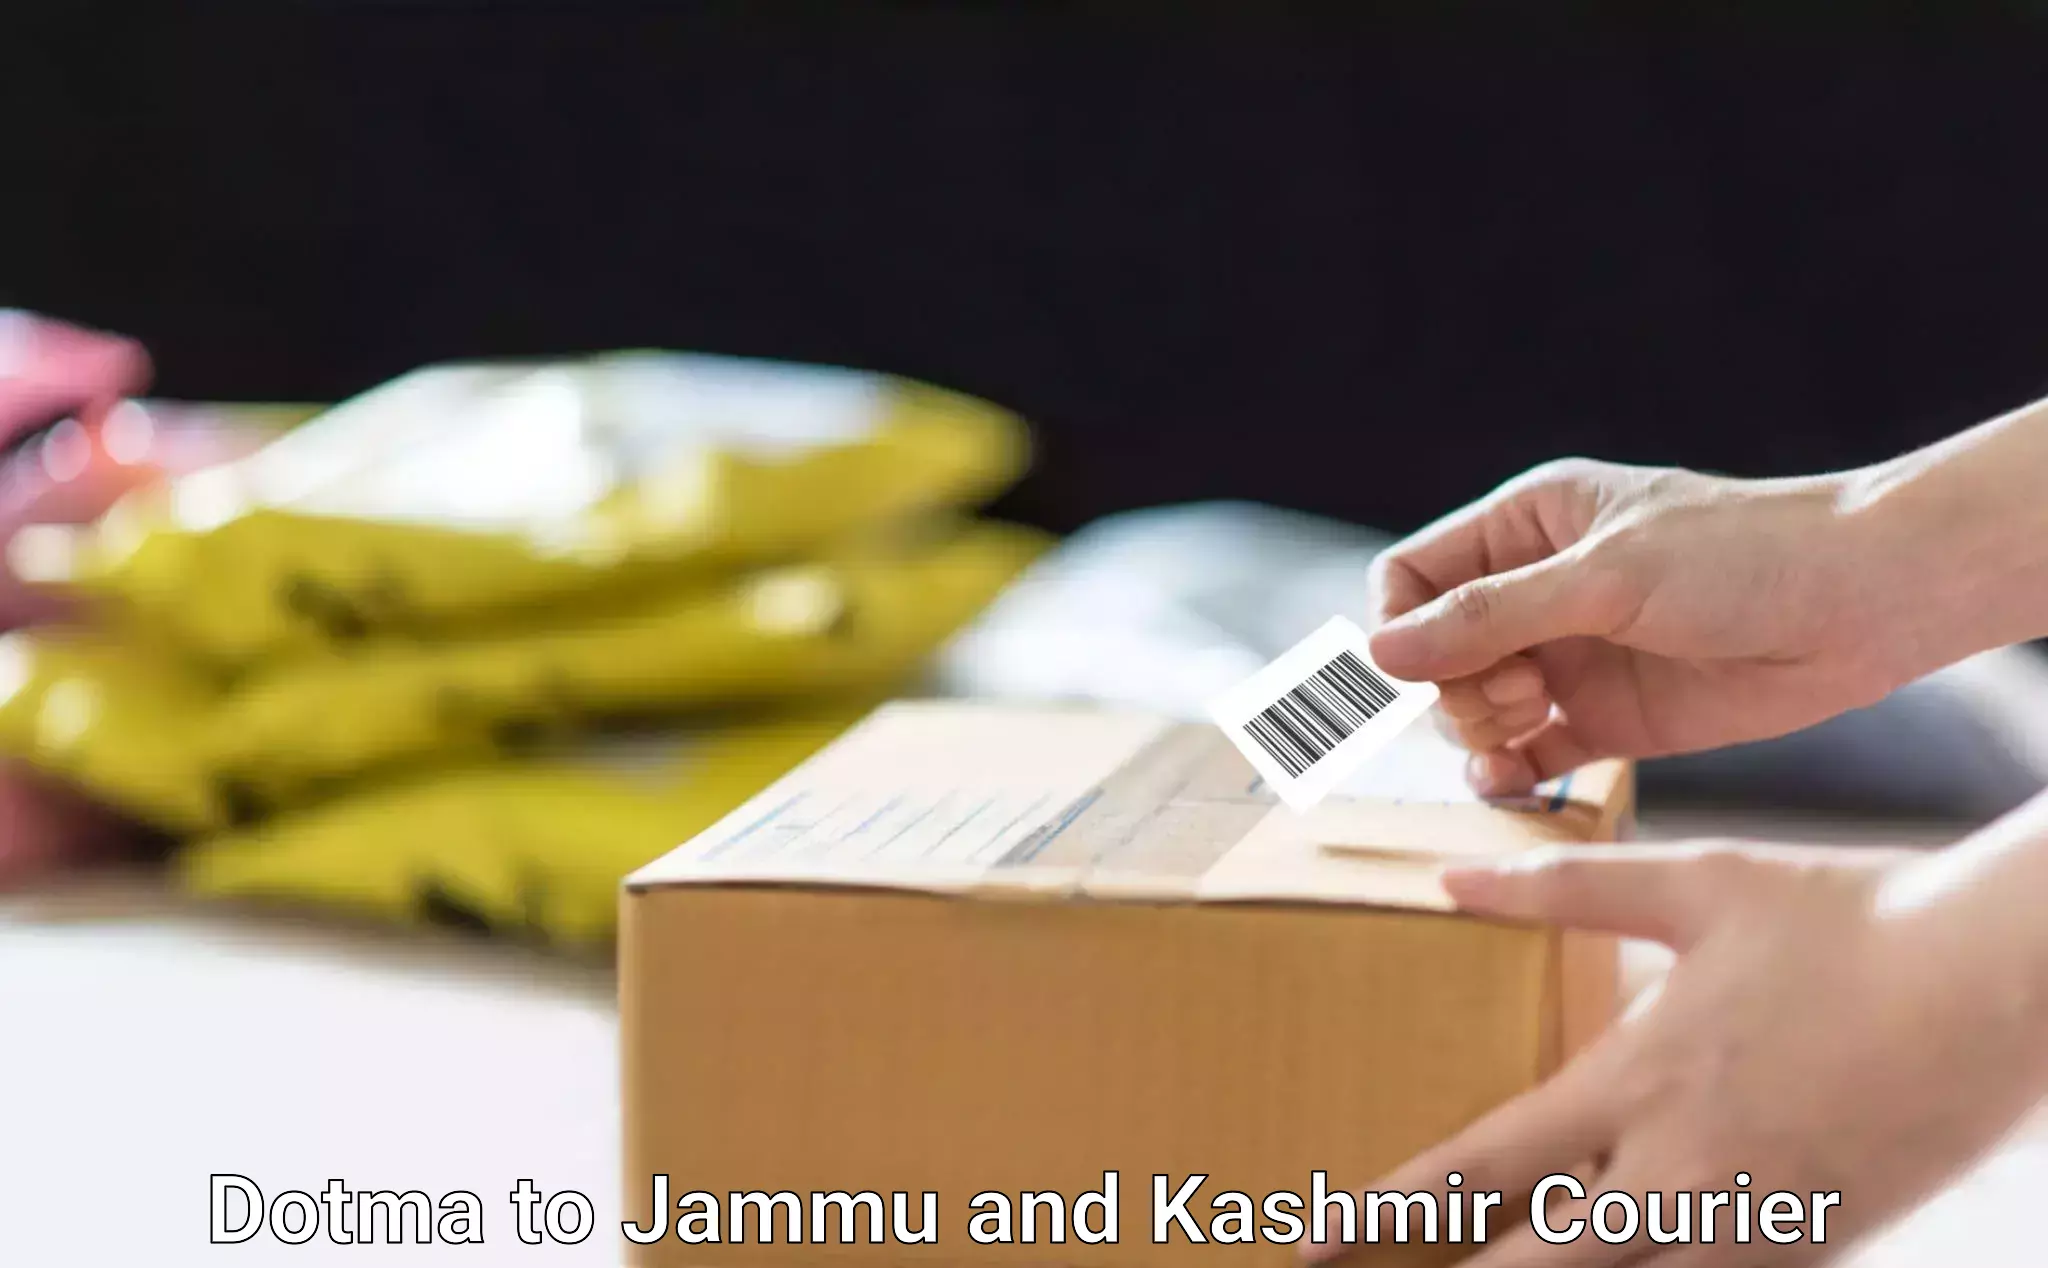 Secure package delivery Dotma to Srinagar Kashmir